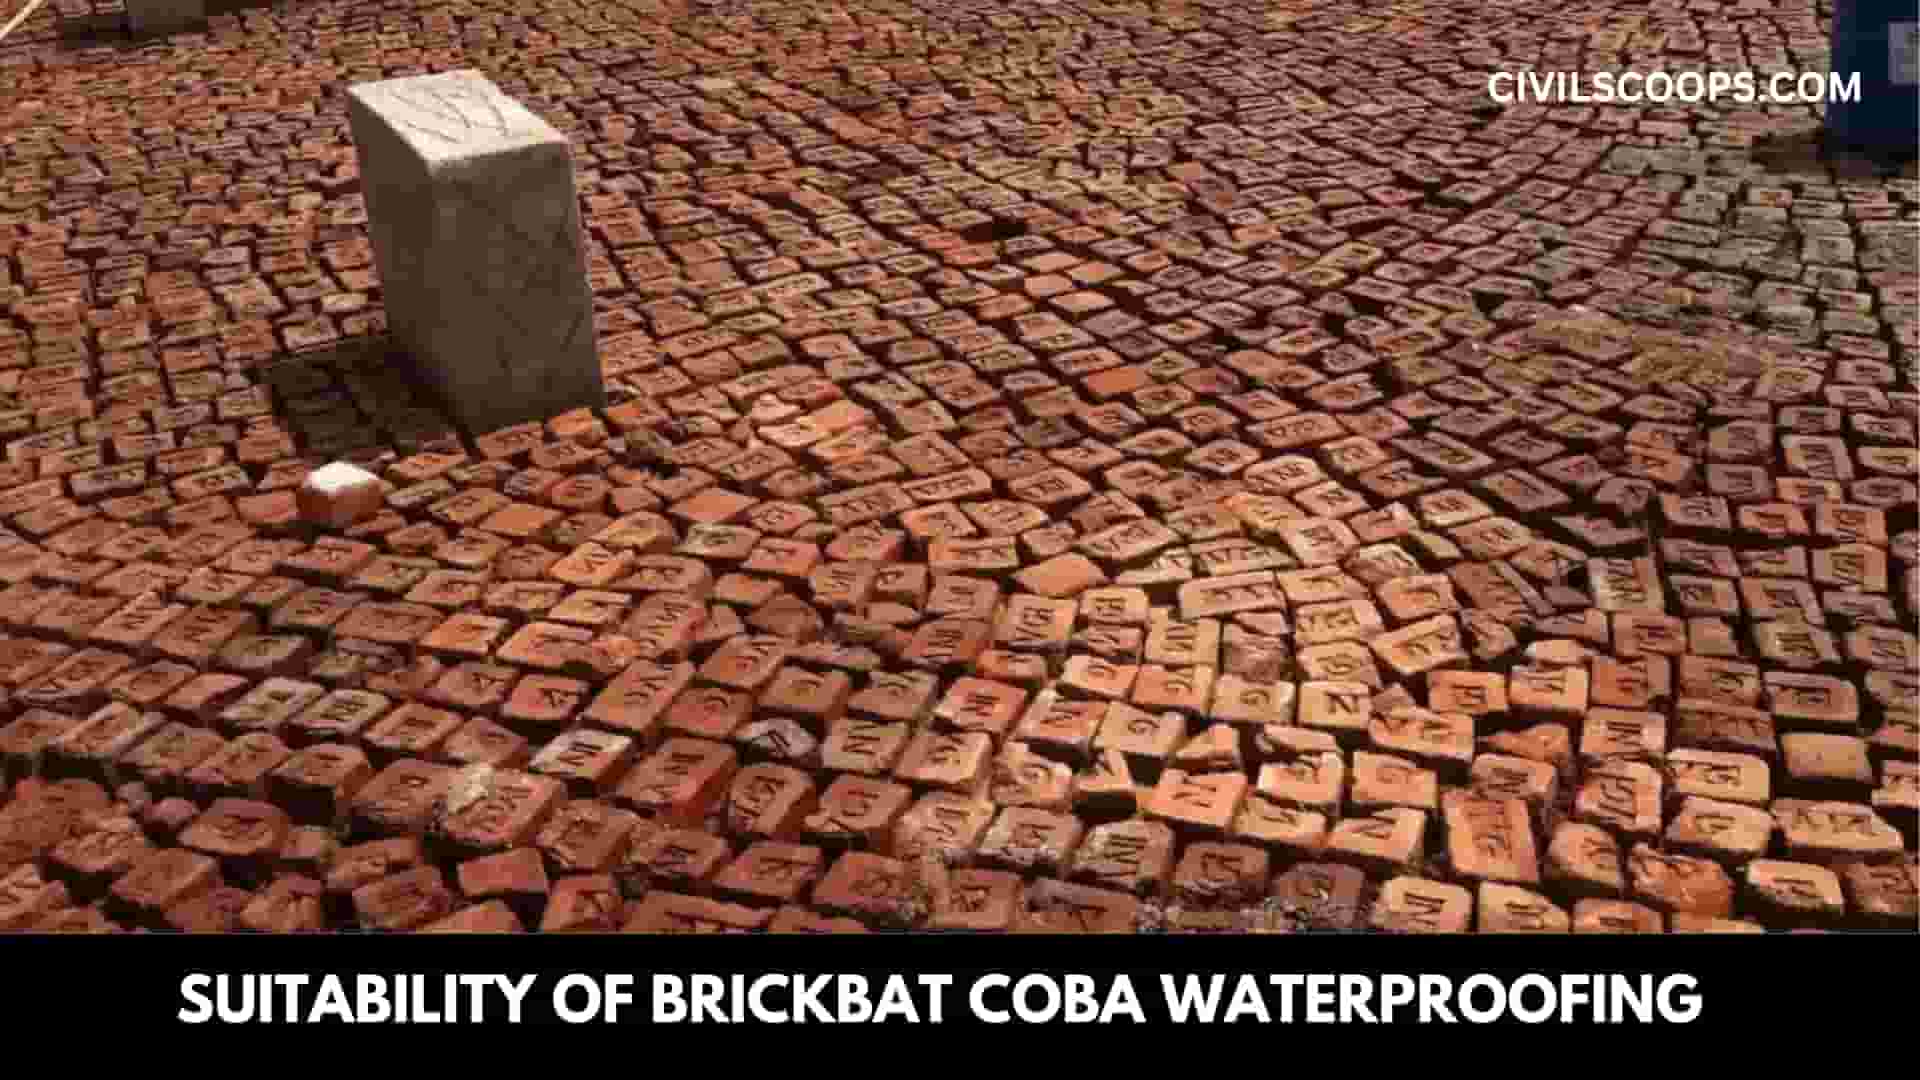 Suitability of Brickbat Coba Waterproofing